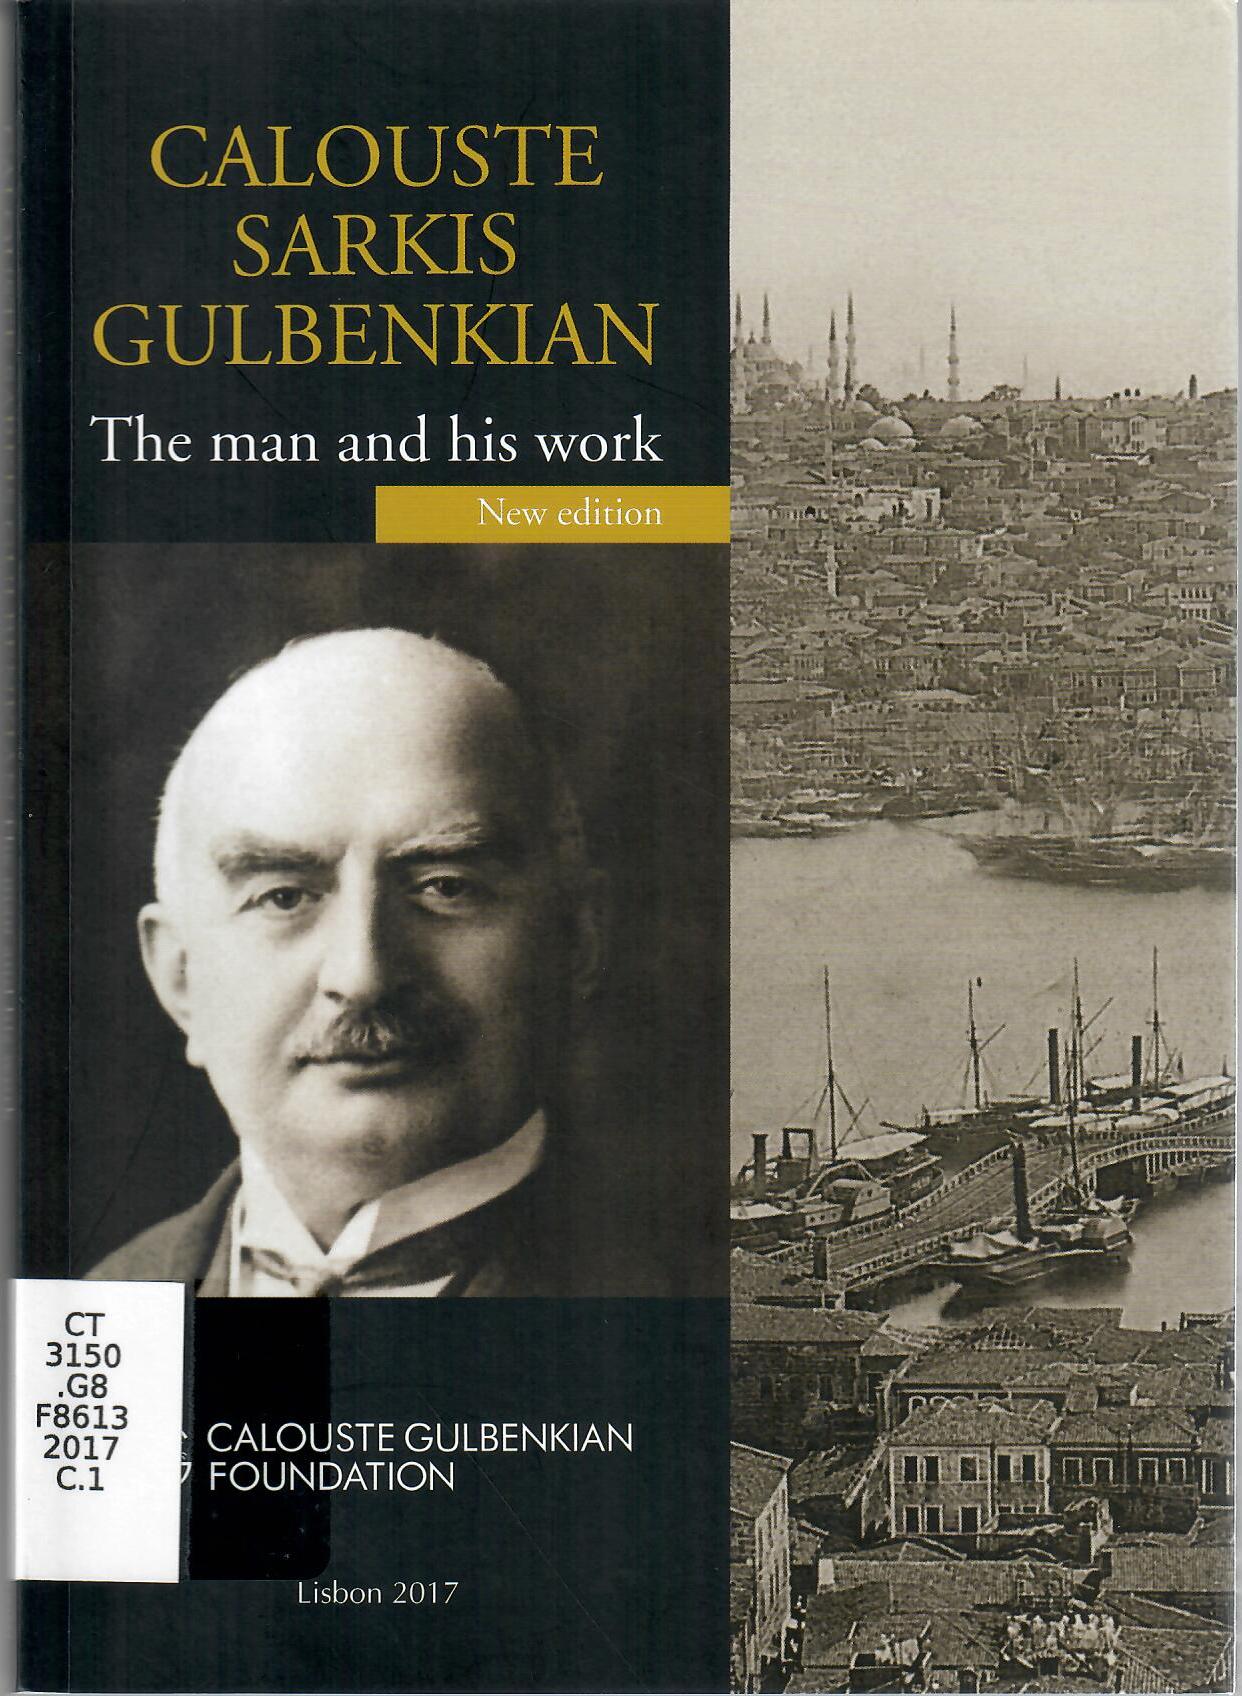 CALOUSTE SARKIS GULBENKIAN THE MAN AND HIS WORK